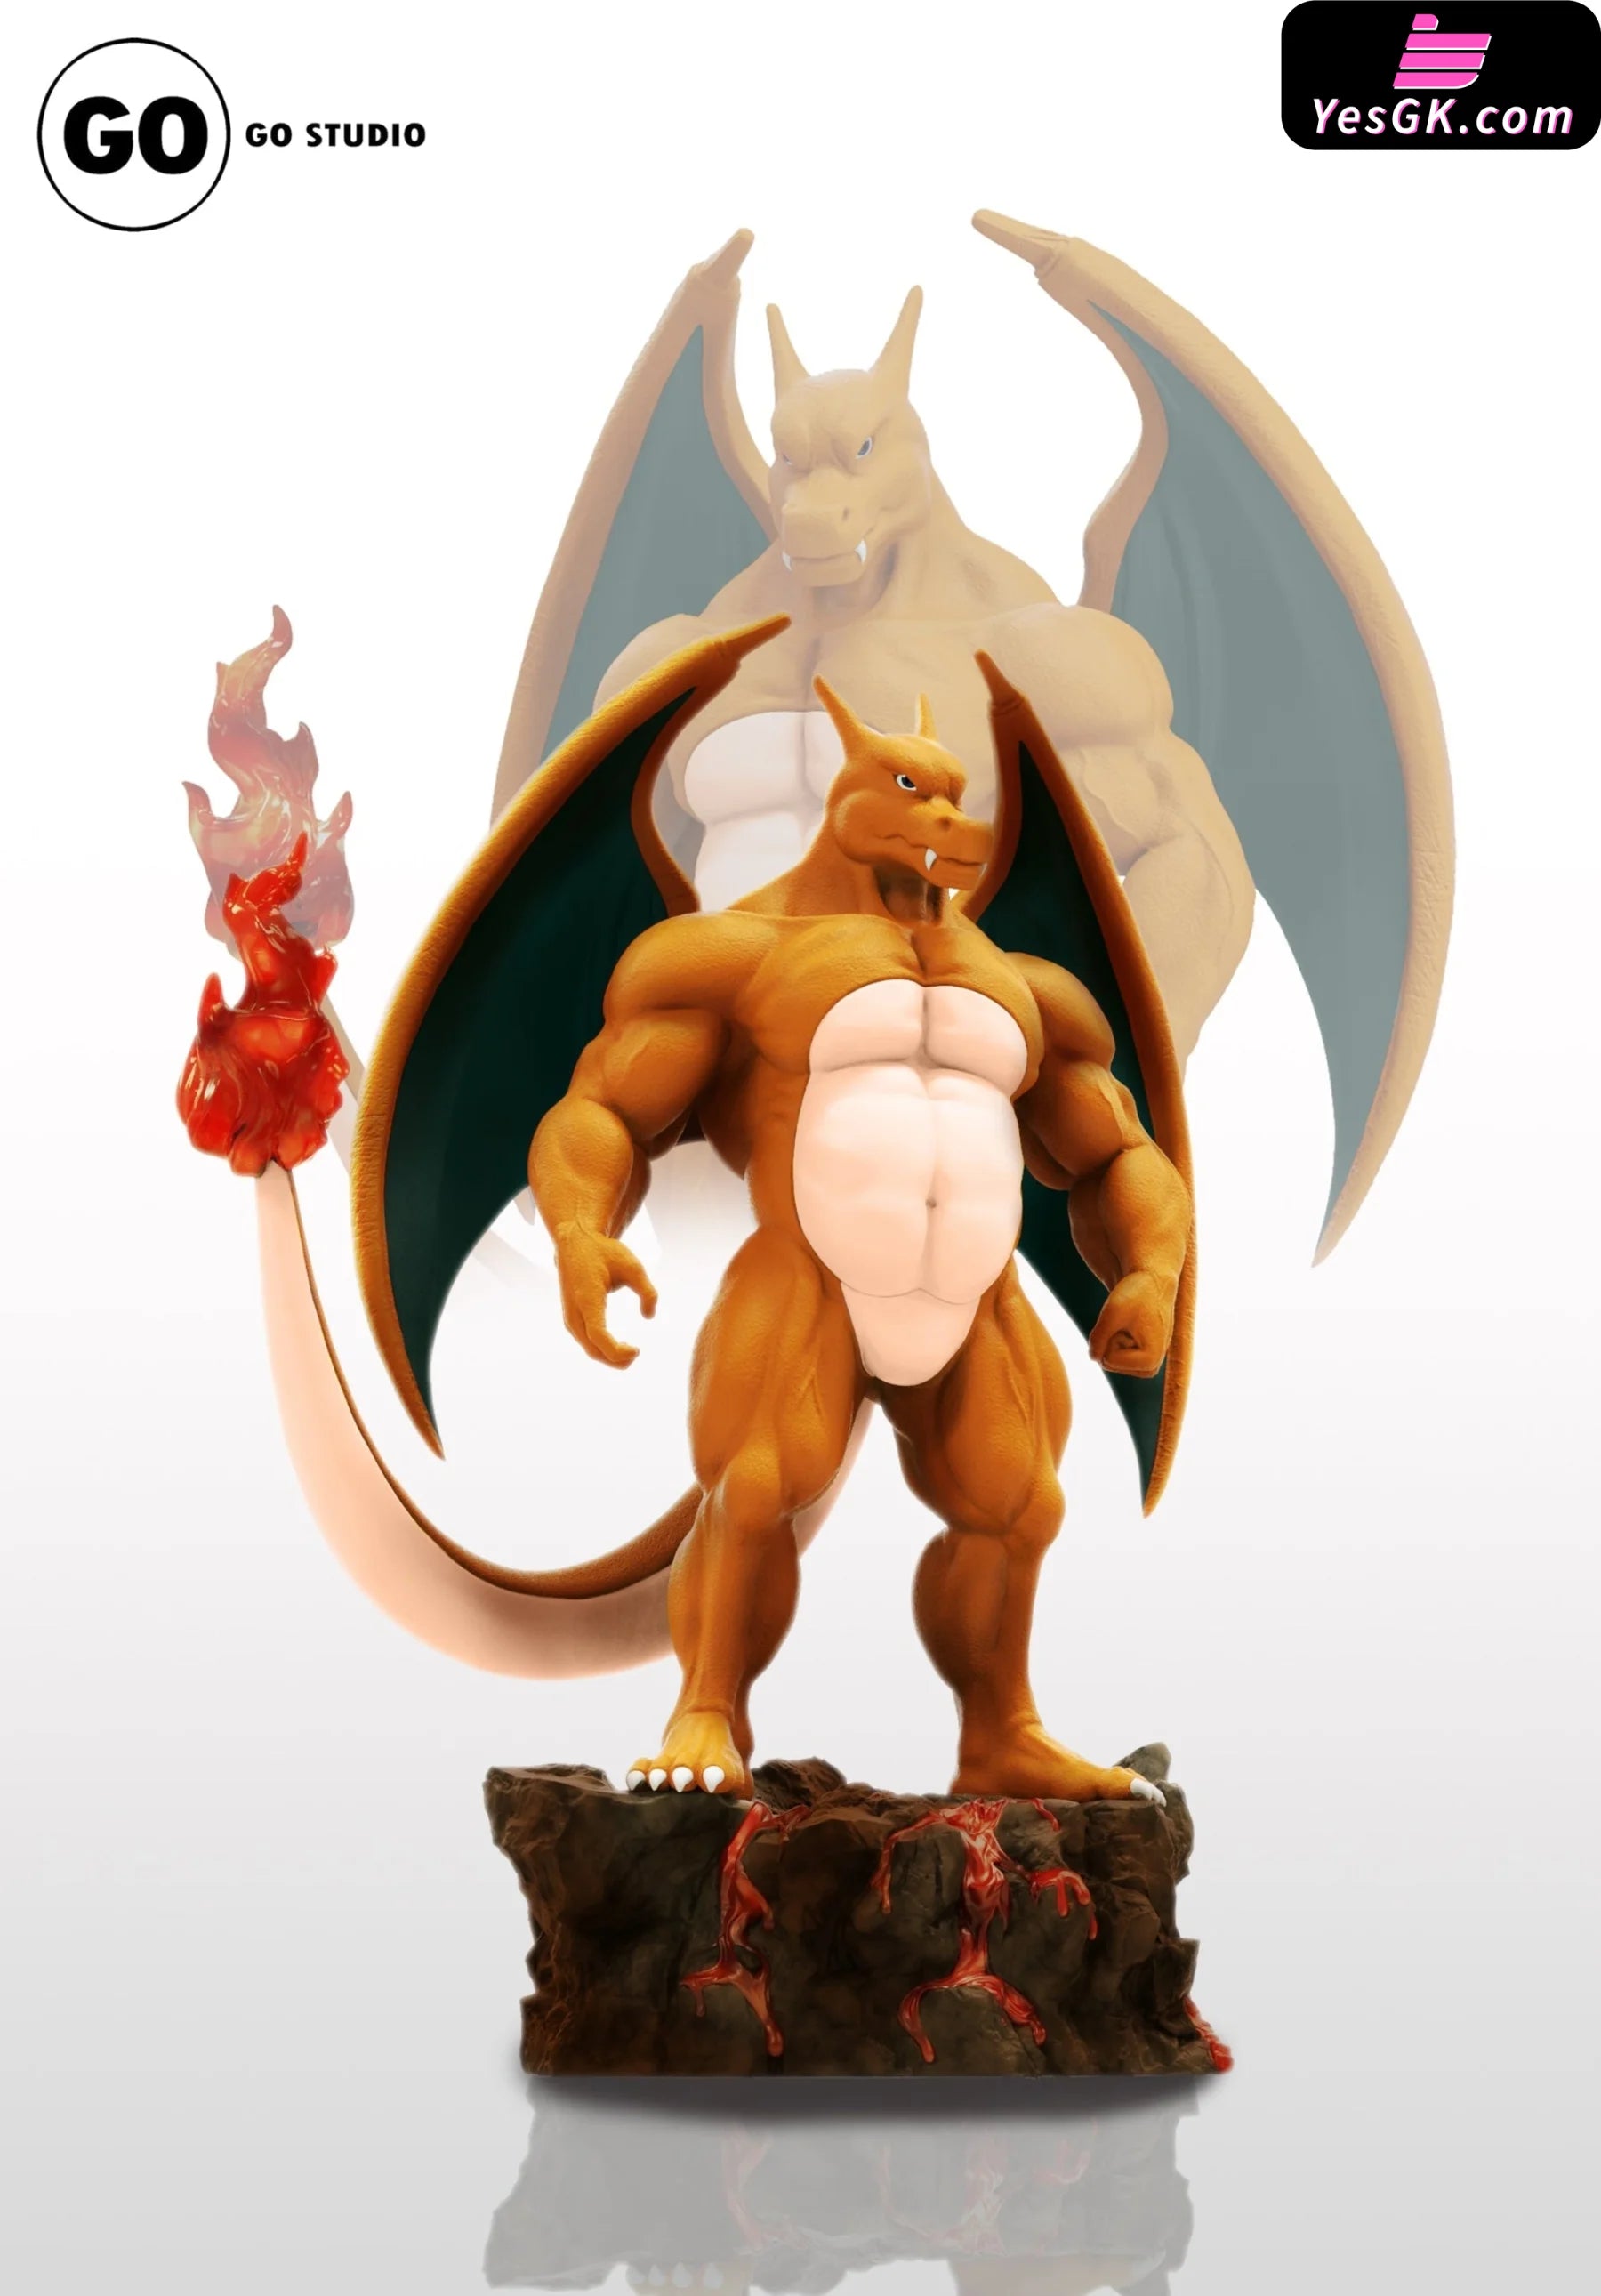 Mega Charizard Y - Pokemon Resin Statue - EGGS Studios [In Stock]